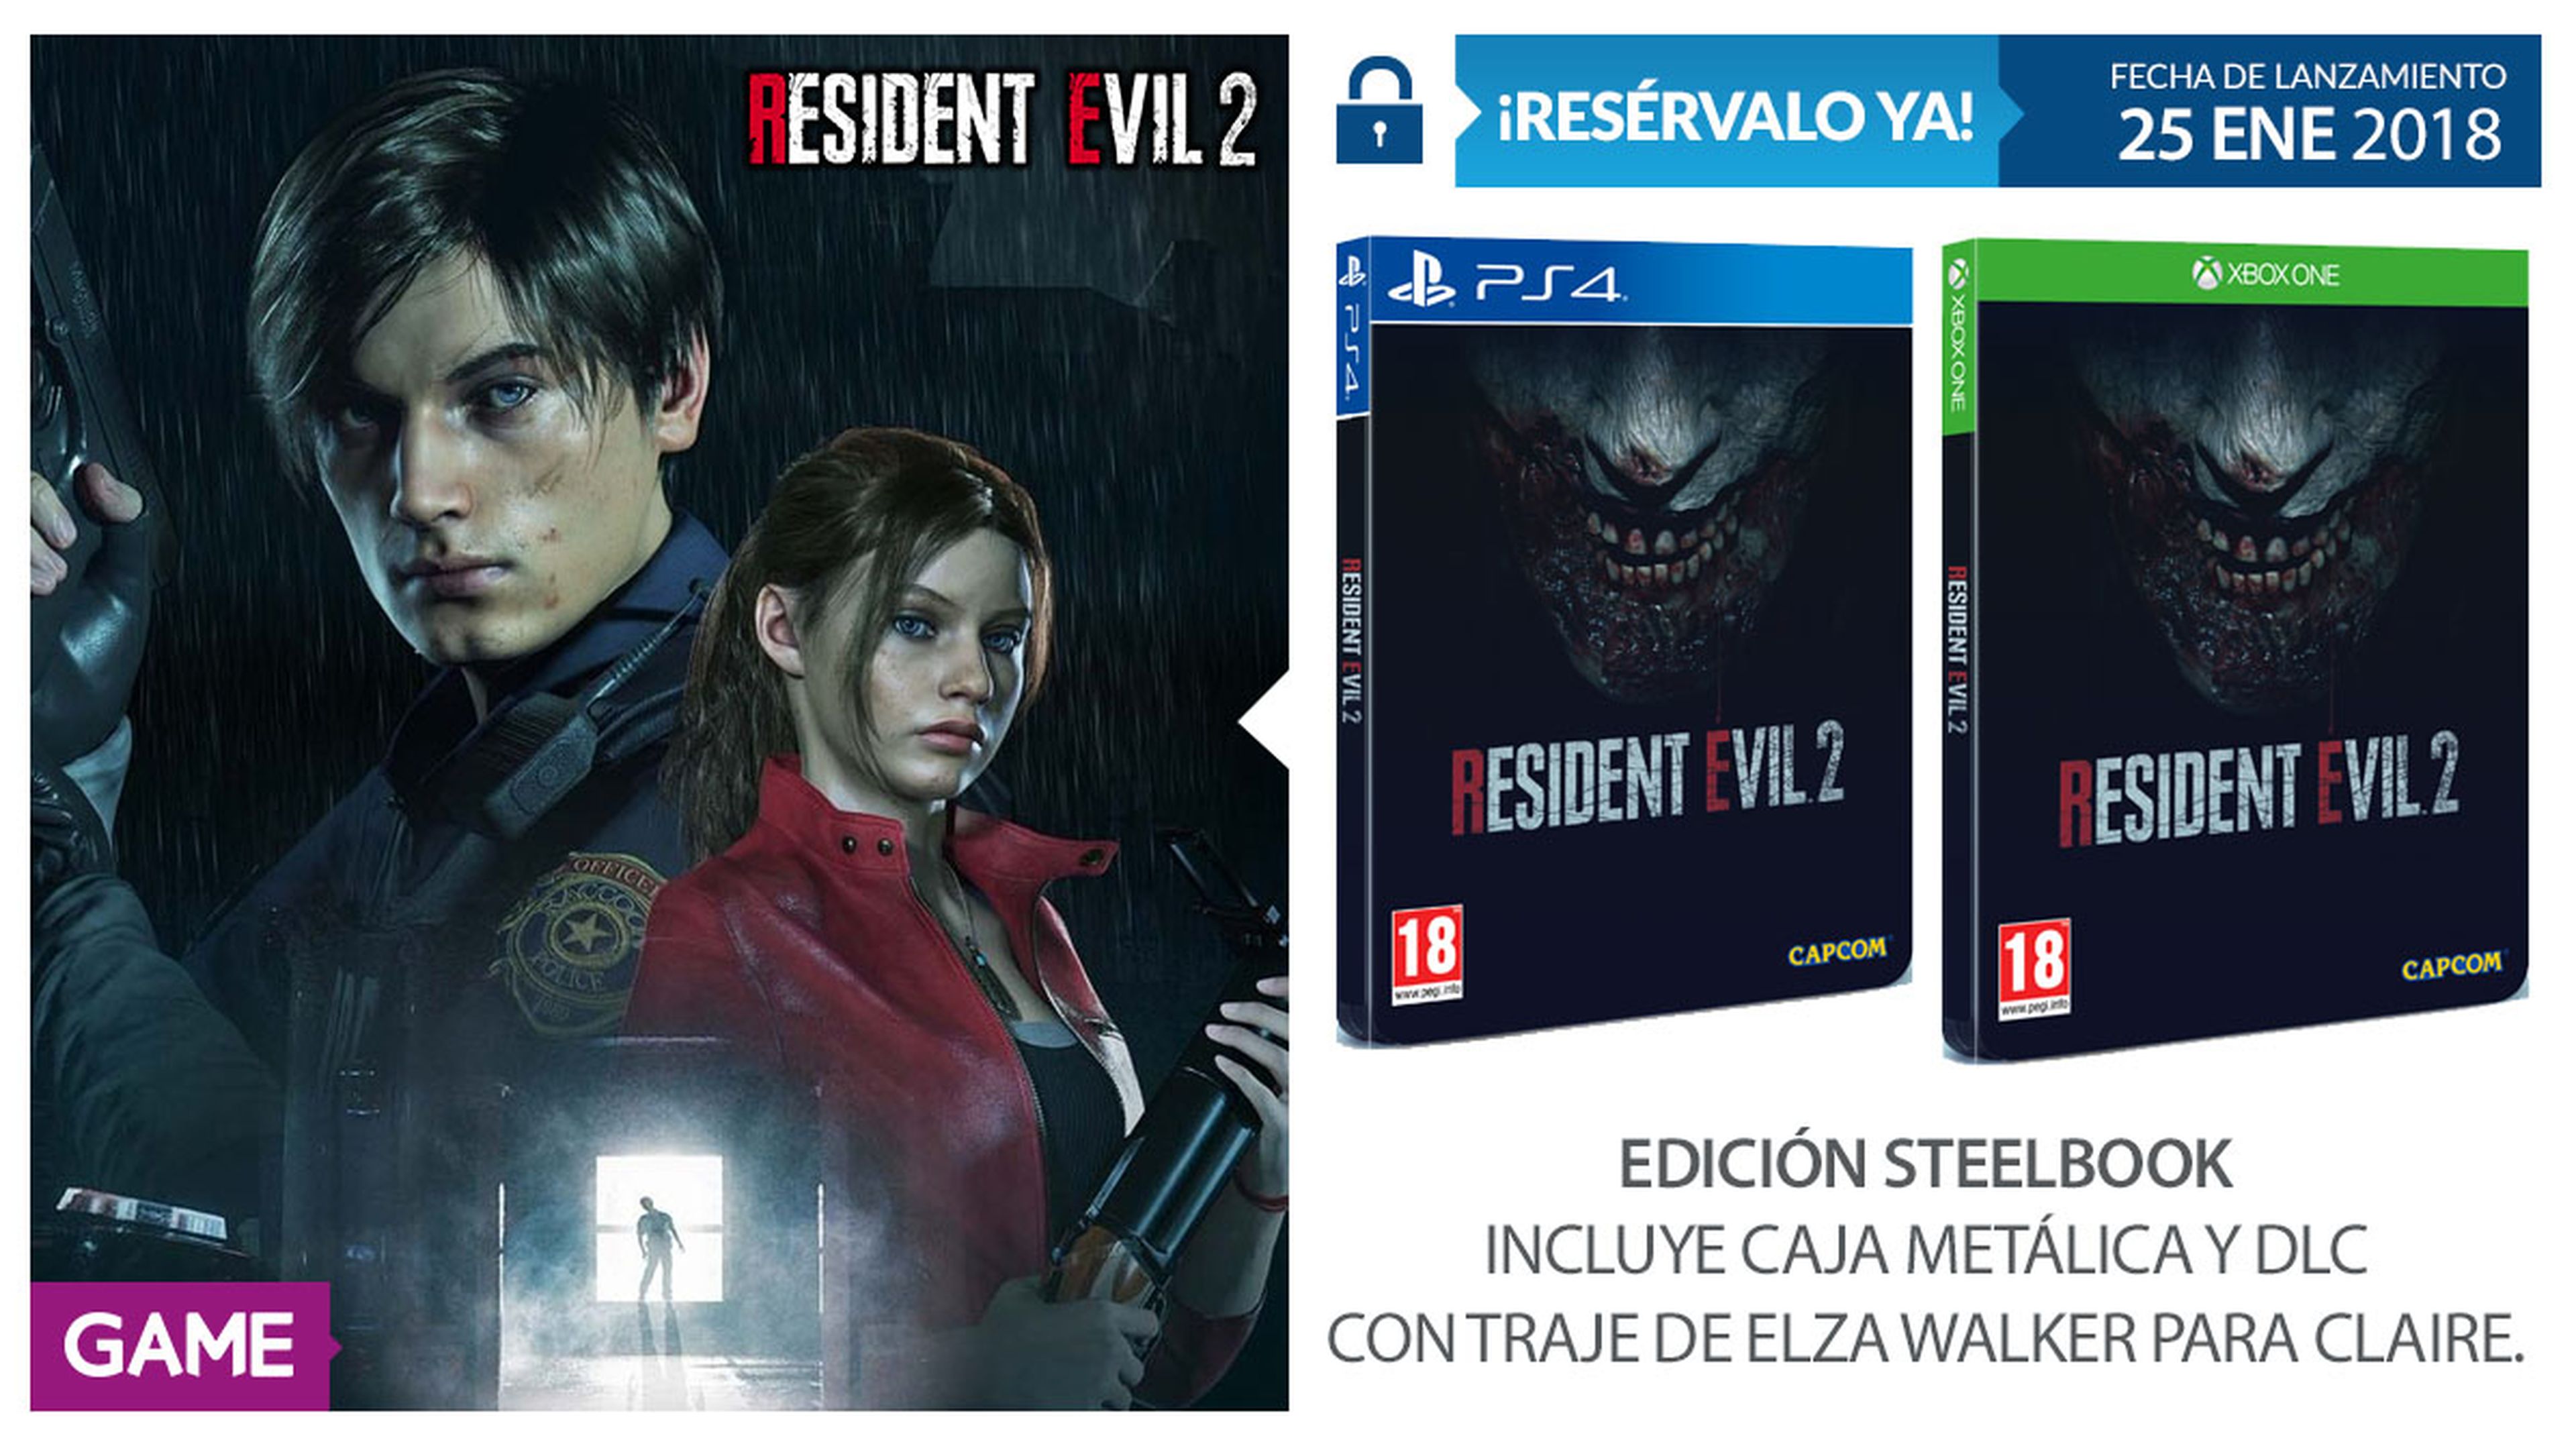 Resident Evil 2 Edición Steelbook en GAME